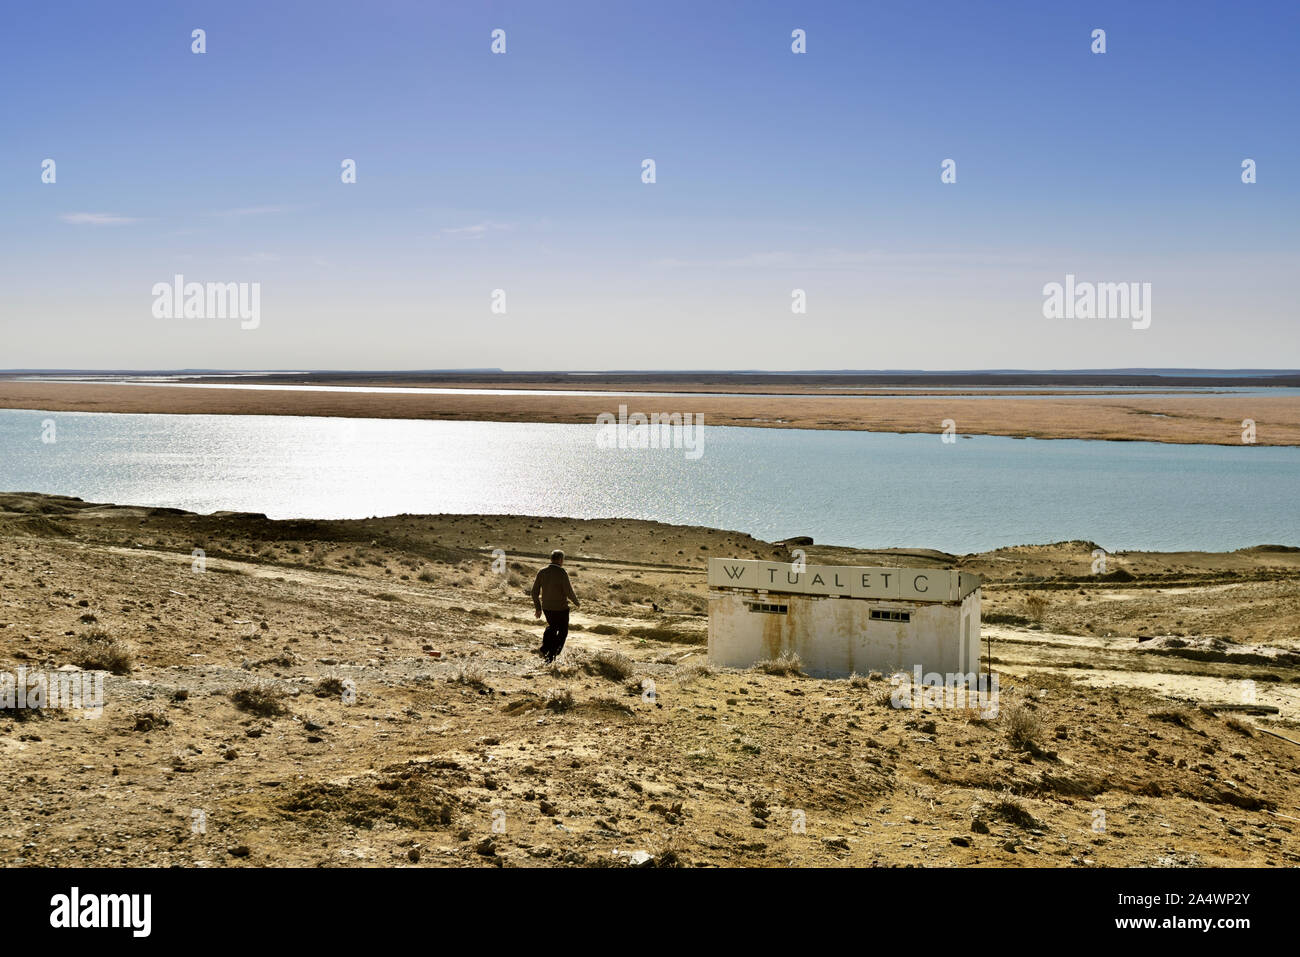 L'Amu Darya fiume, il fiume Oxus dell'antichità, attraversando il deserto Kyzylkum sul confine con il Turkmenistan. Deserto Kysylkum, Uzbekistan Foto Stock